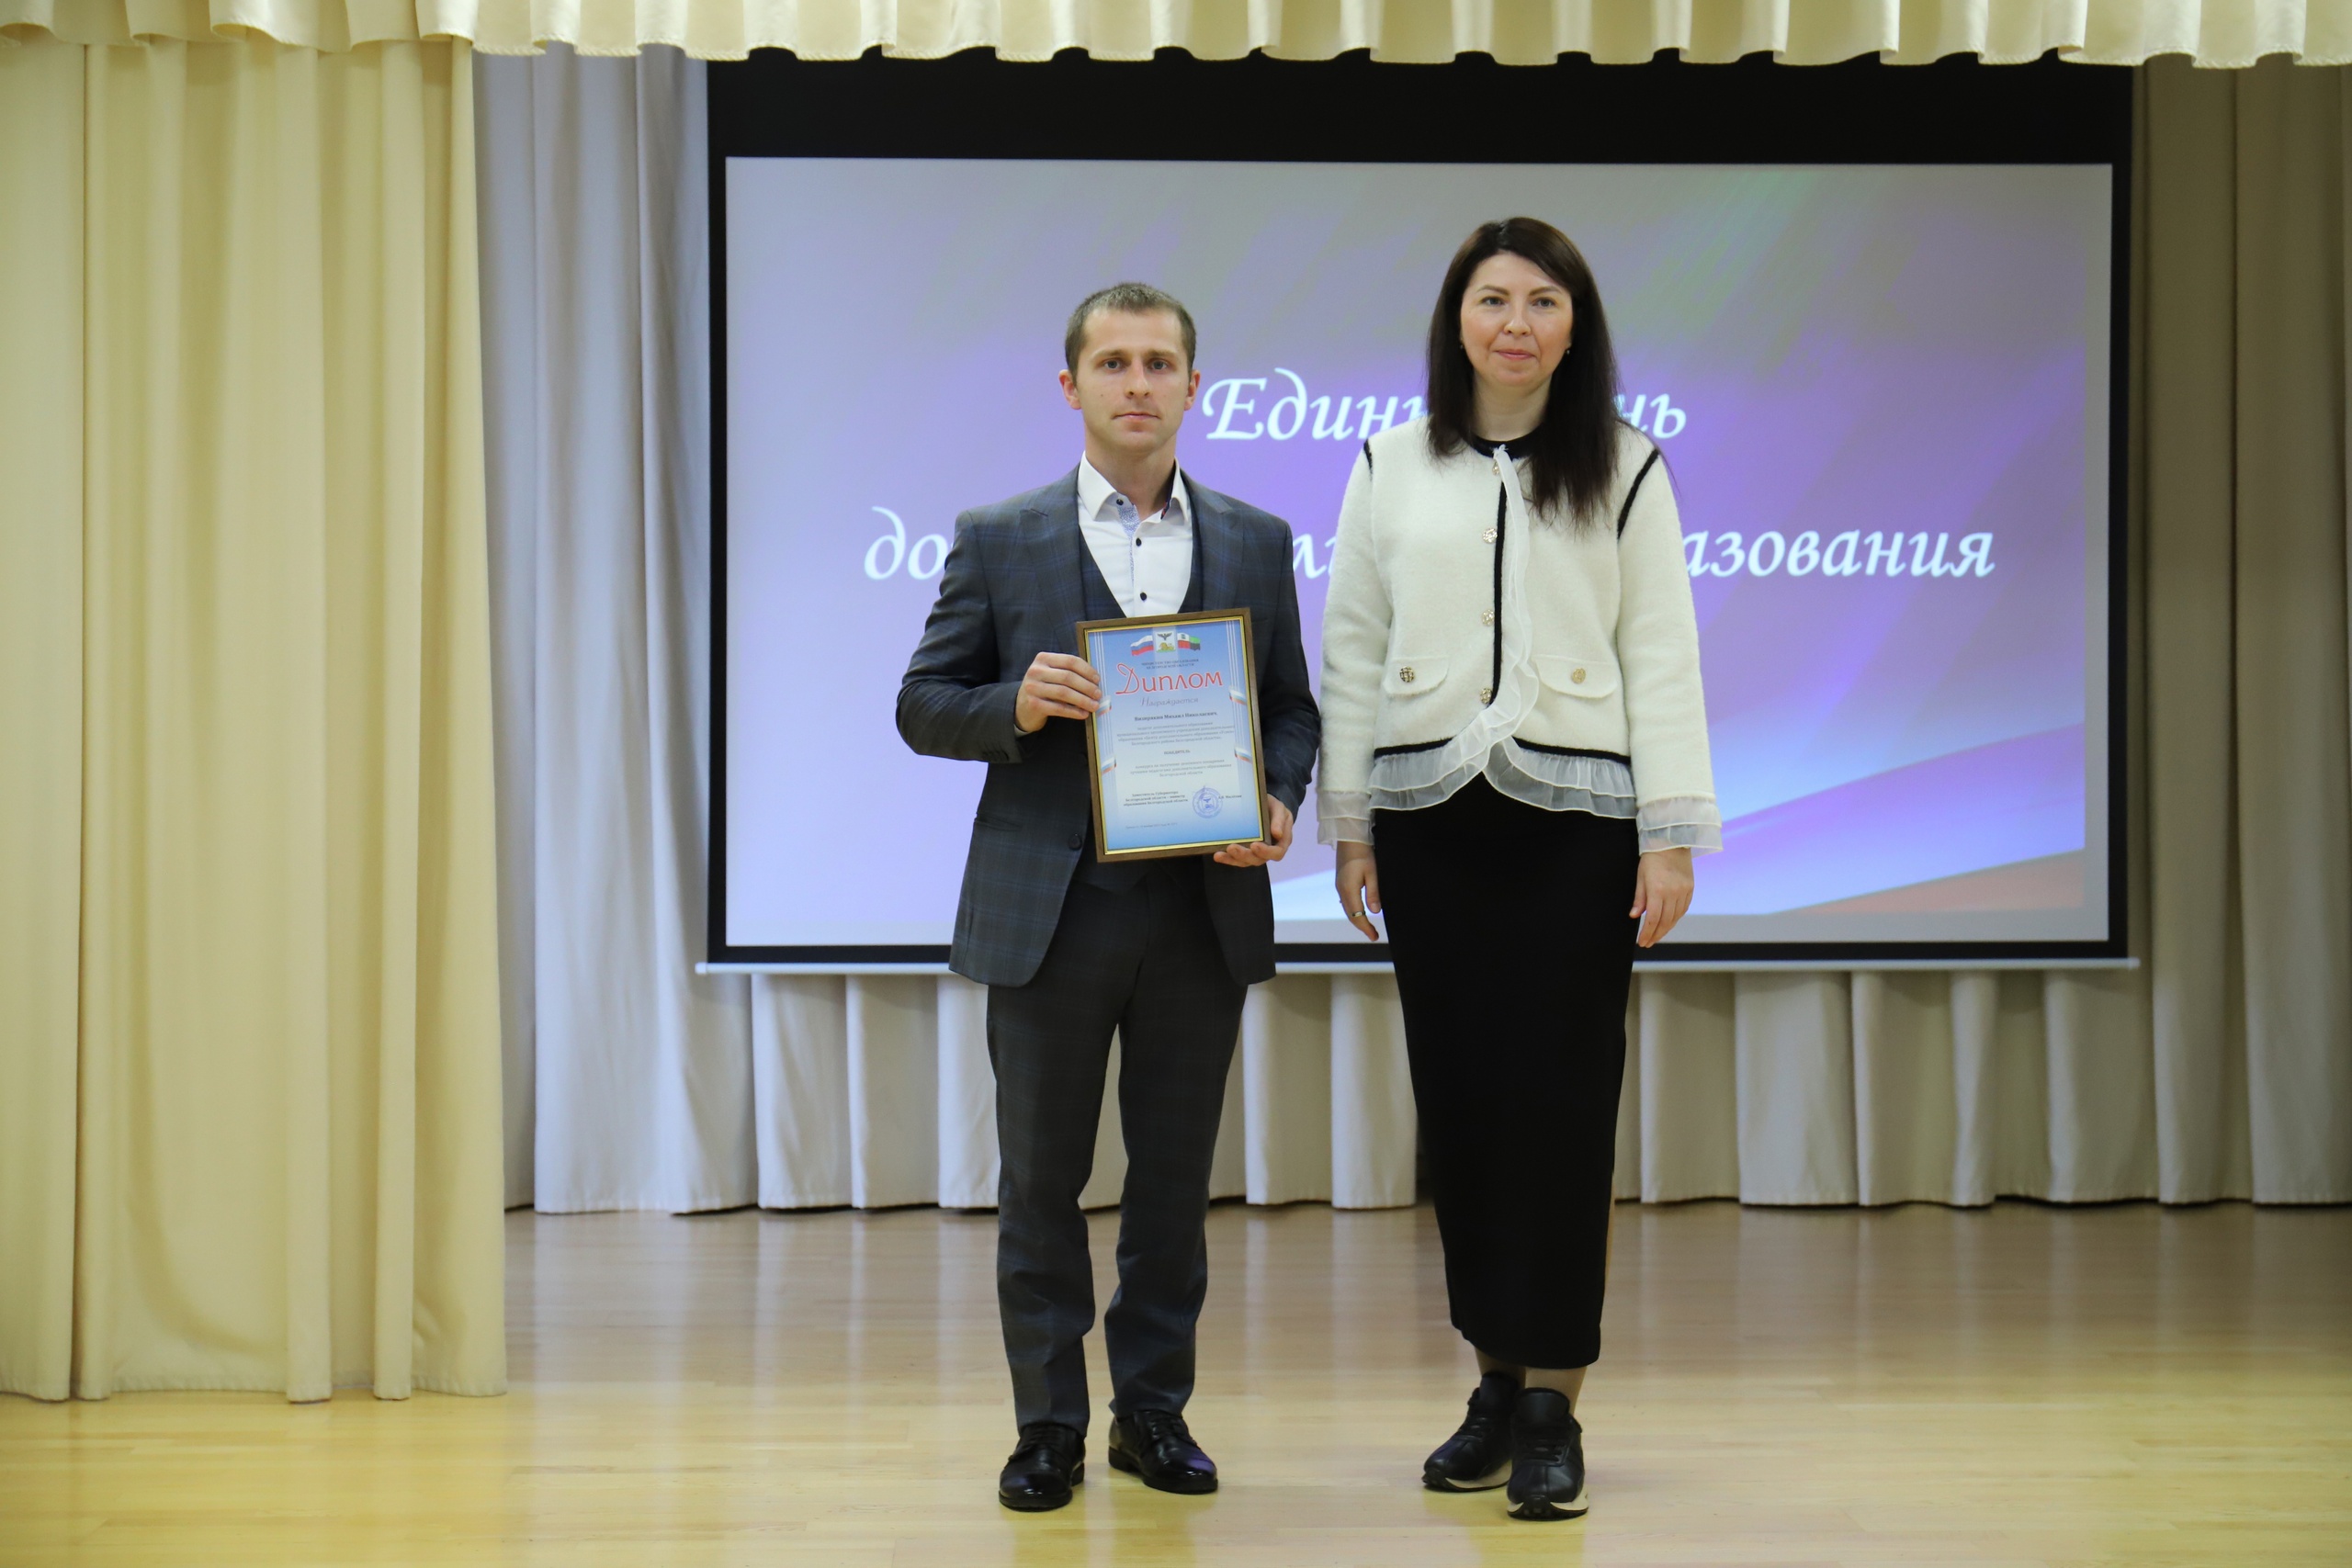 Педагог ЦДО «Успех» Михаил Визирякин получил диплом победителя областного конкурса профессионального мастерства.